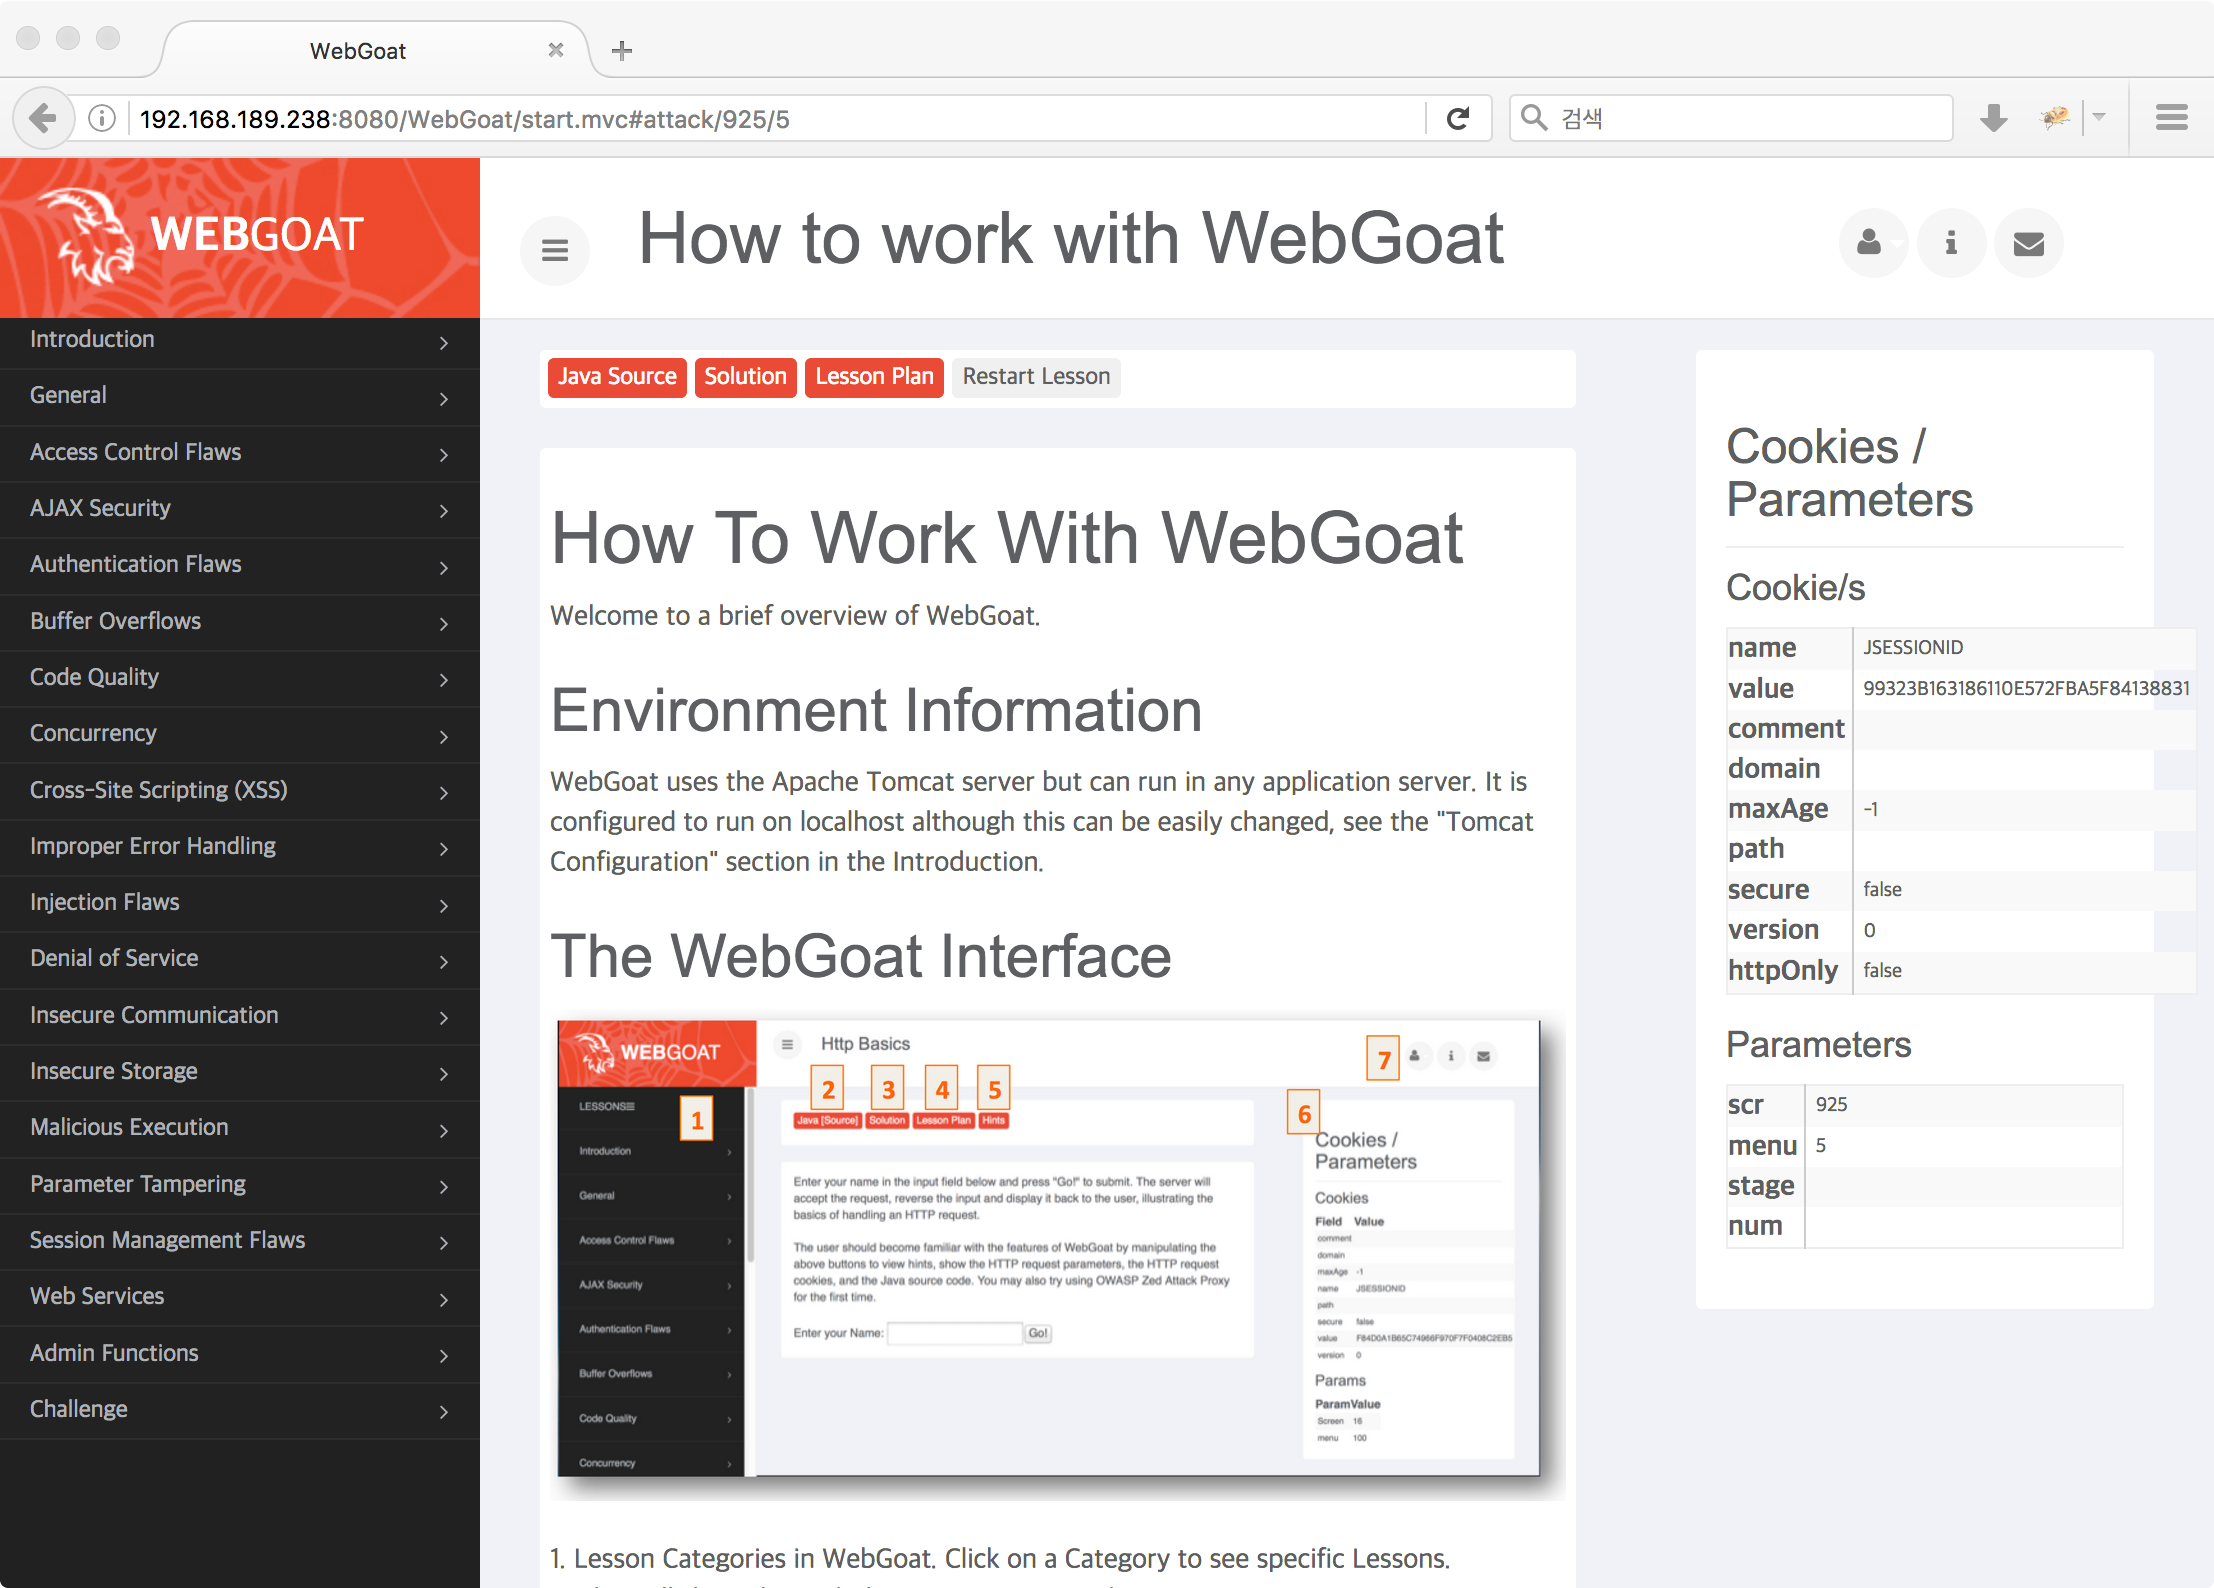 WH-WebGoat-7.0.1: guest logon